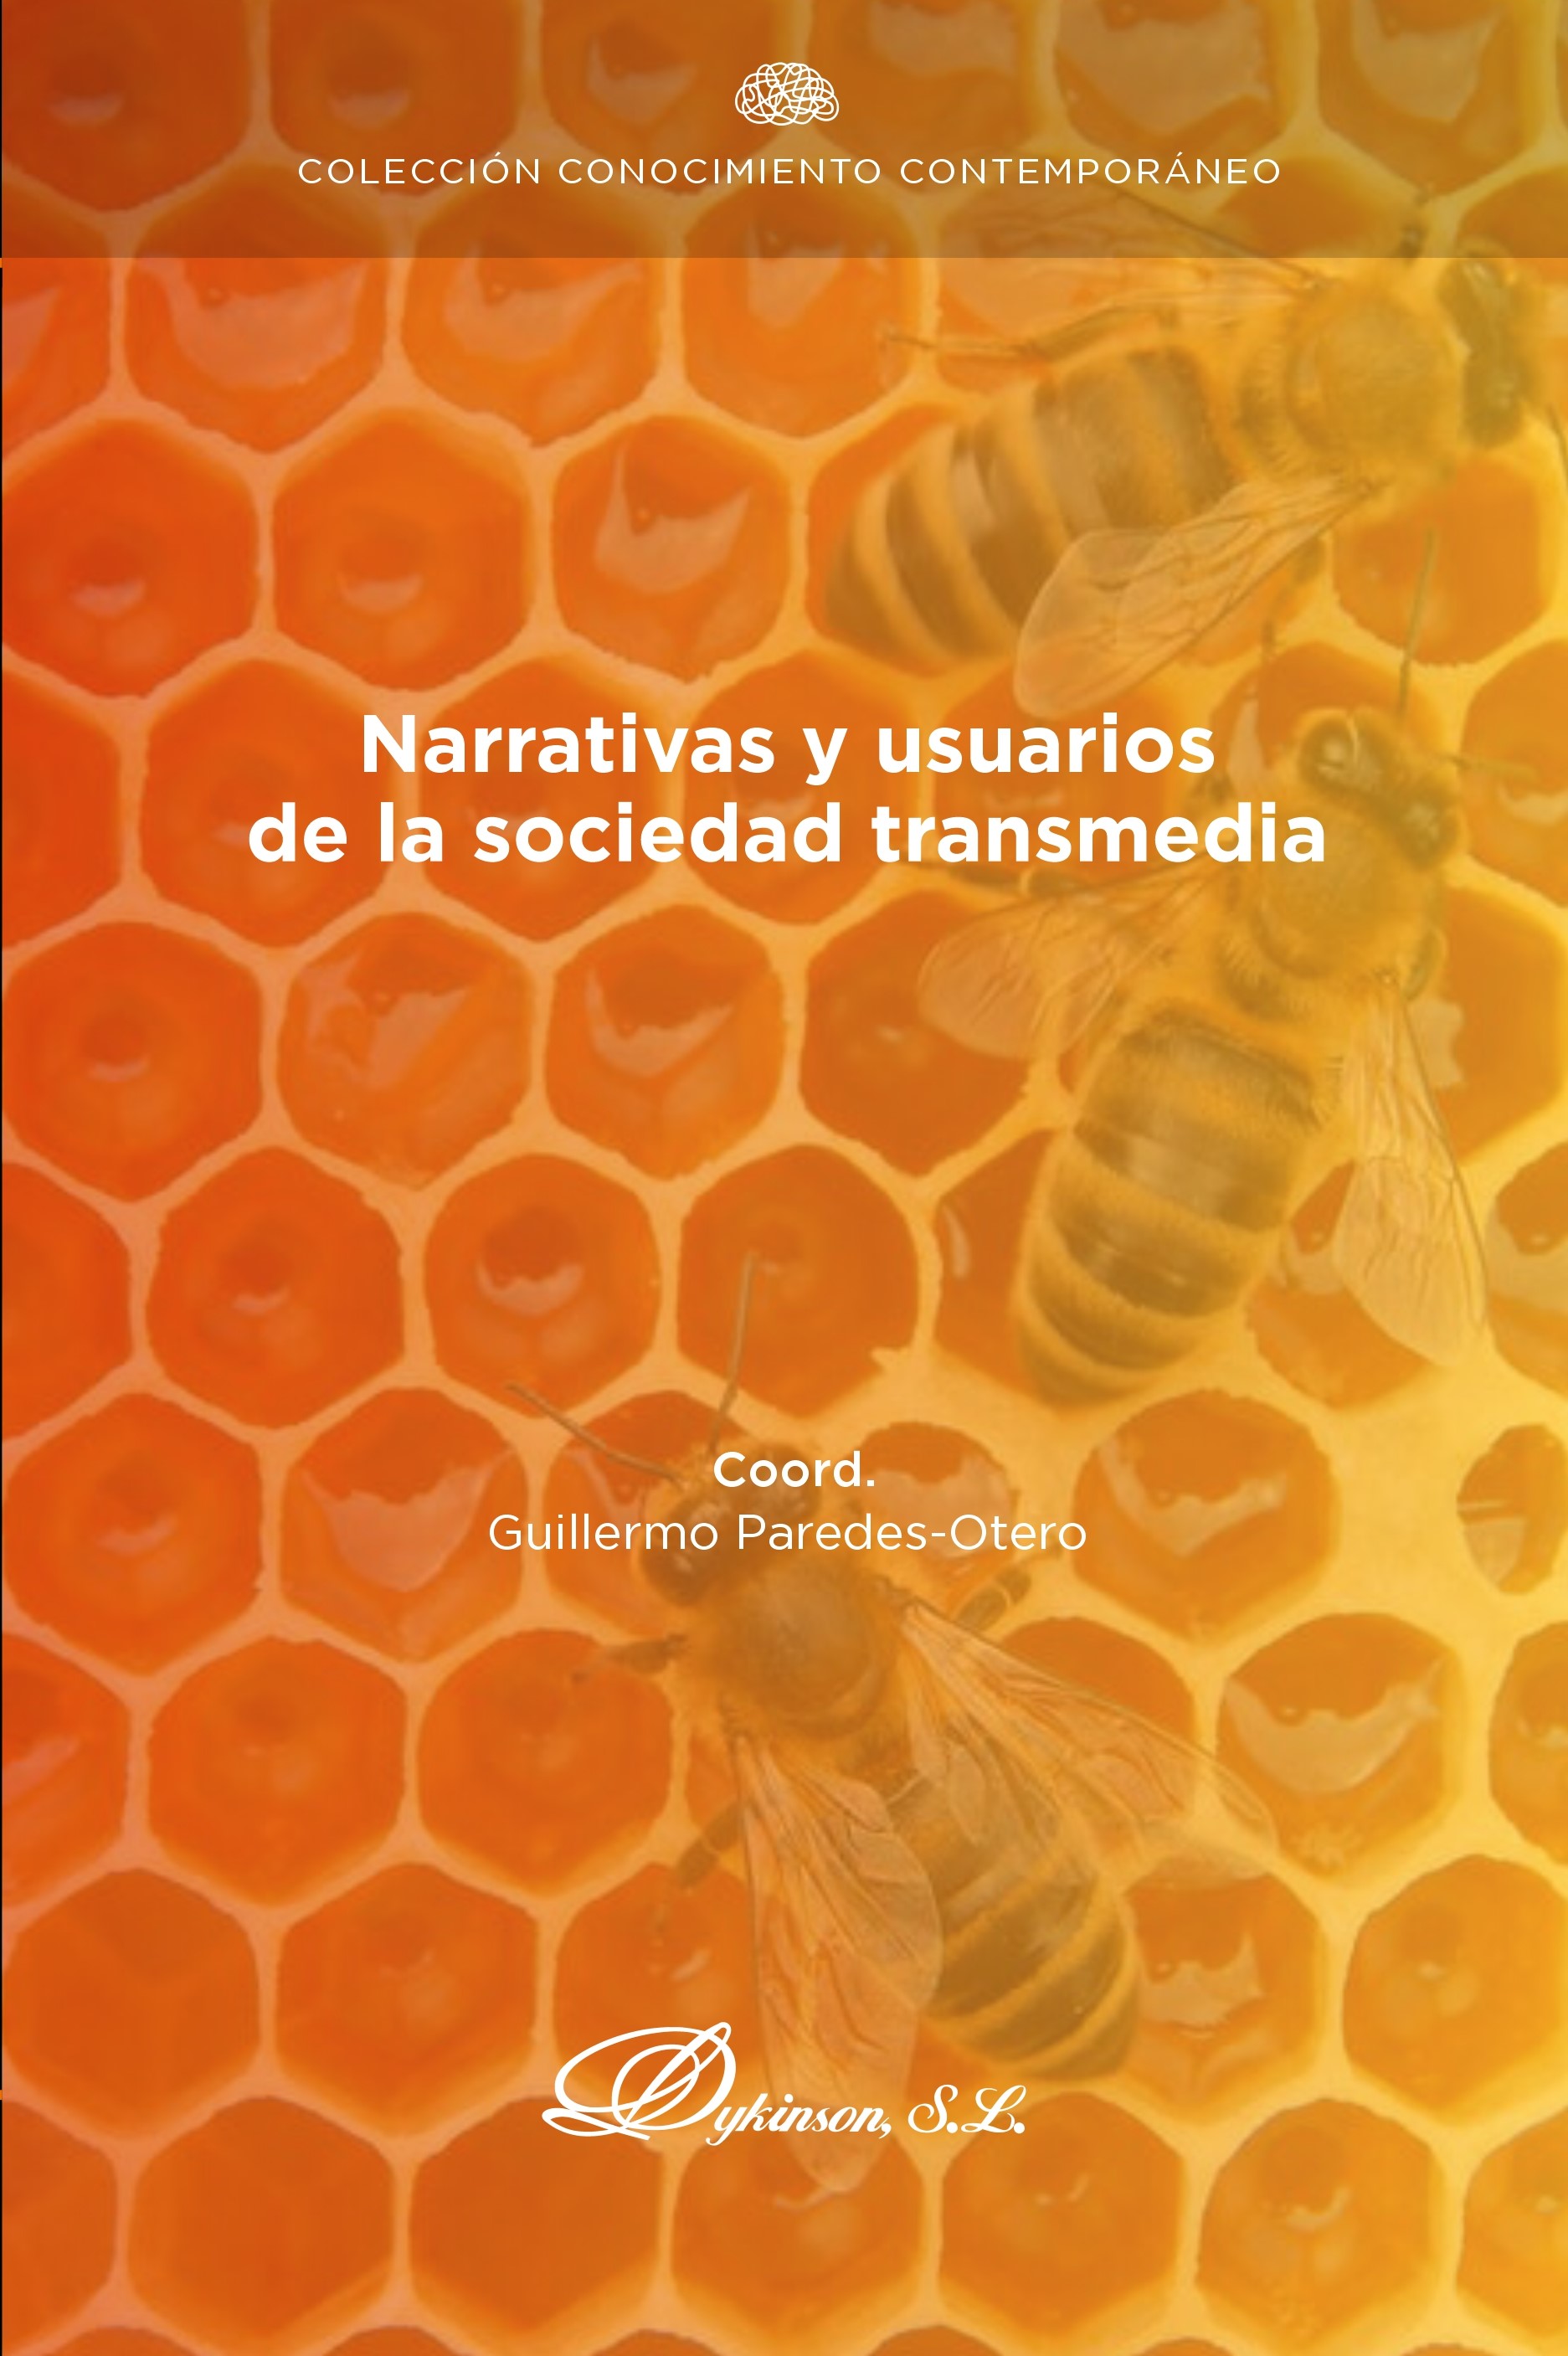 Imagen de portada del libro Narrativas y usuarios de la sociedad transmedia